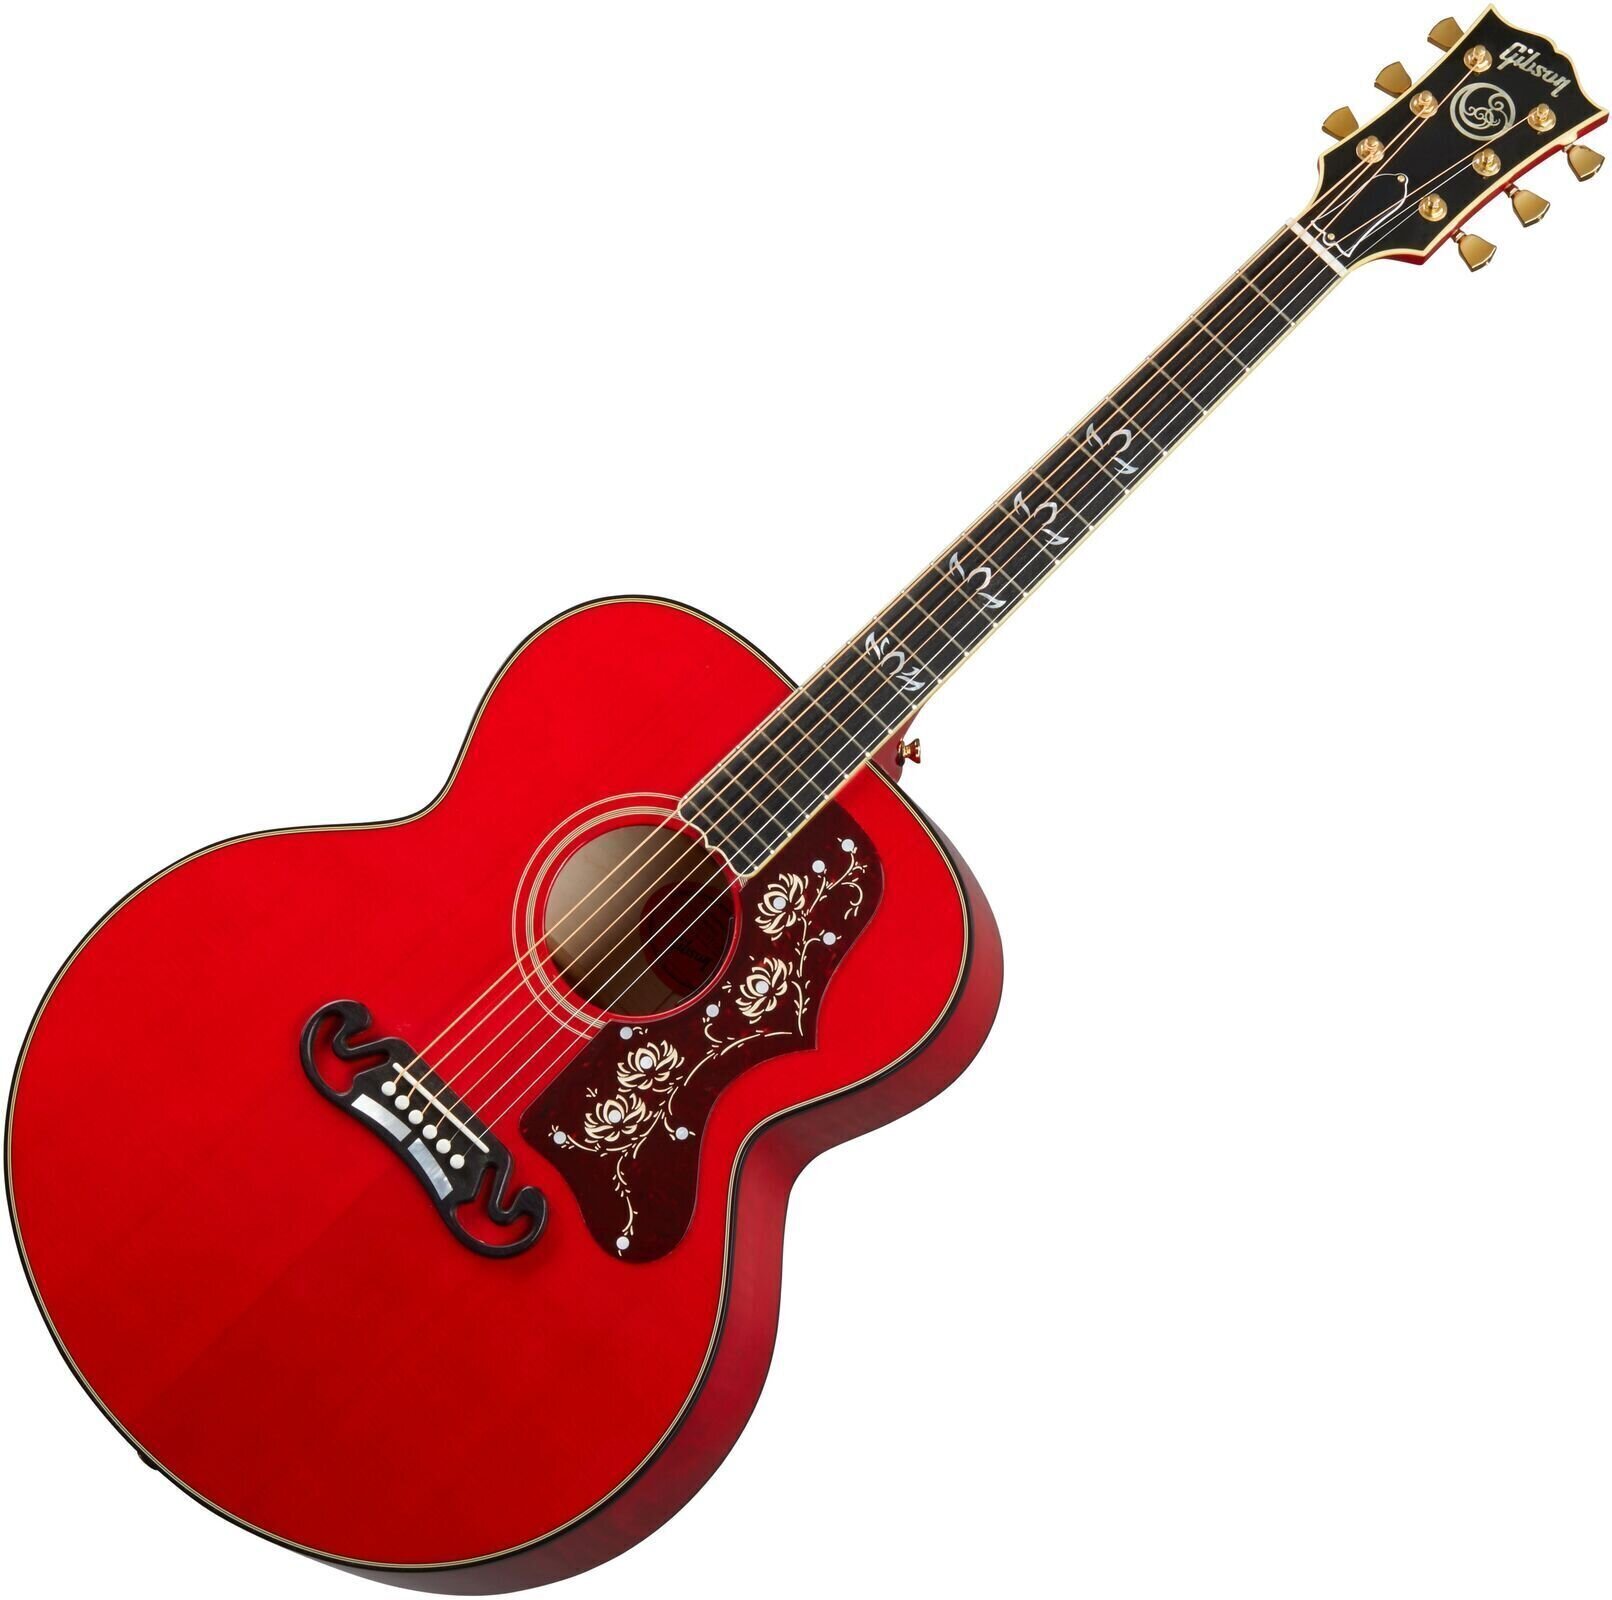 Jumbo elektro-akoestische gitaar Gibson Orianthi SJ-200 Cherry